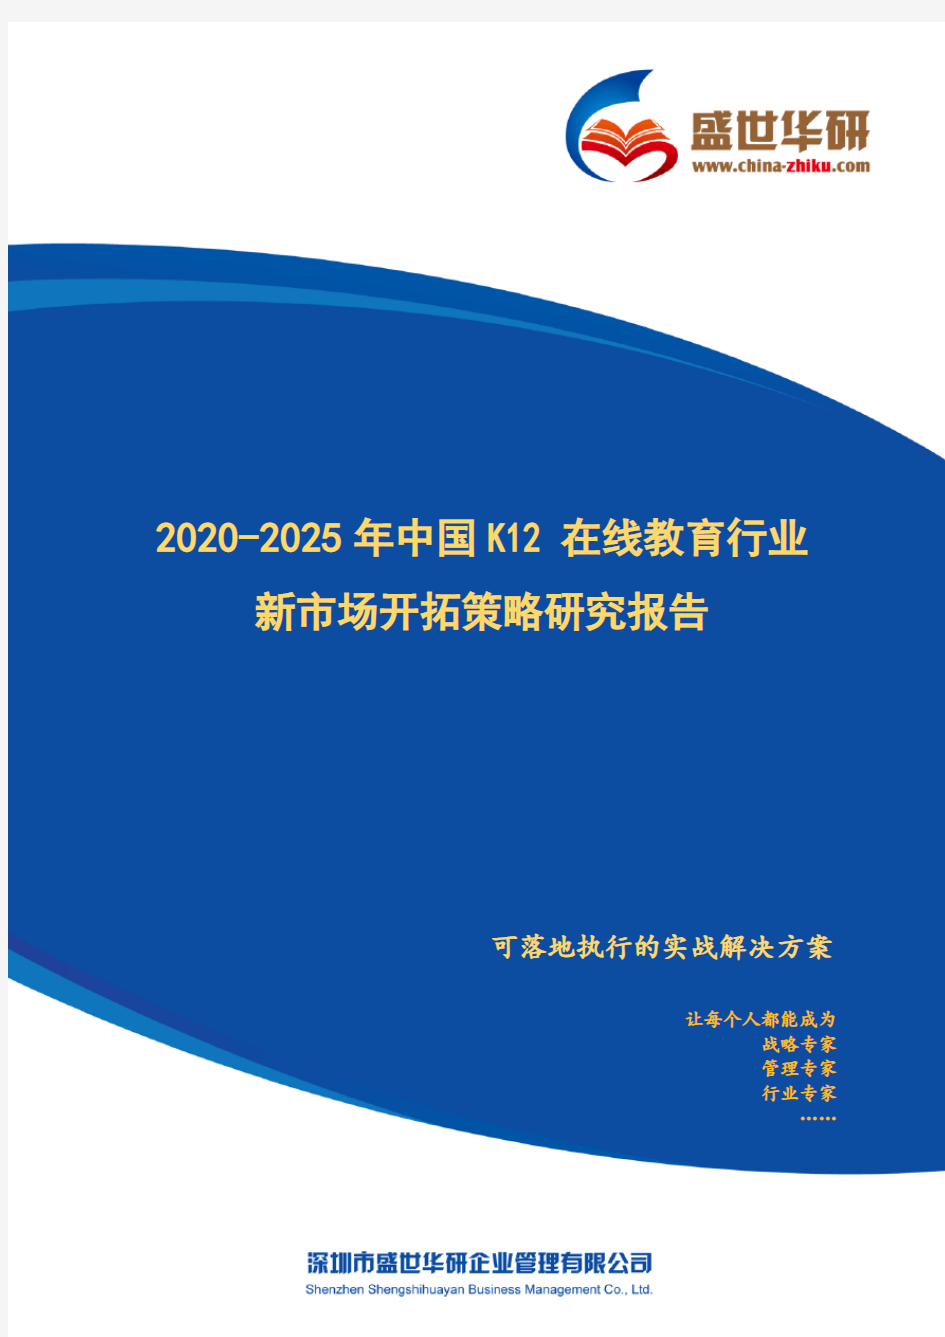 【完整版】2020-2025年中国K12在线教育行业新市场开拓策略研究报告